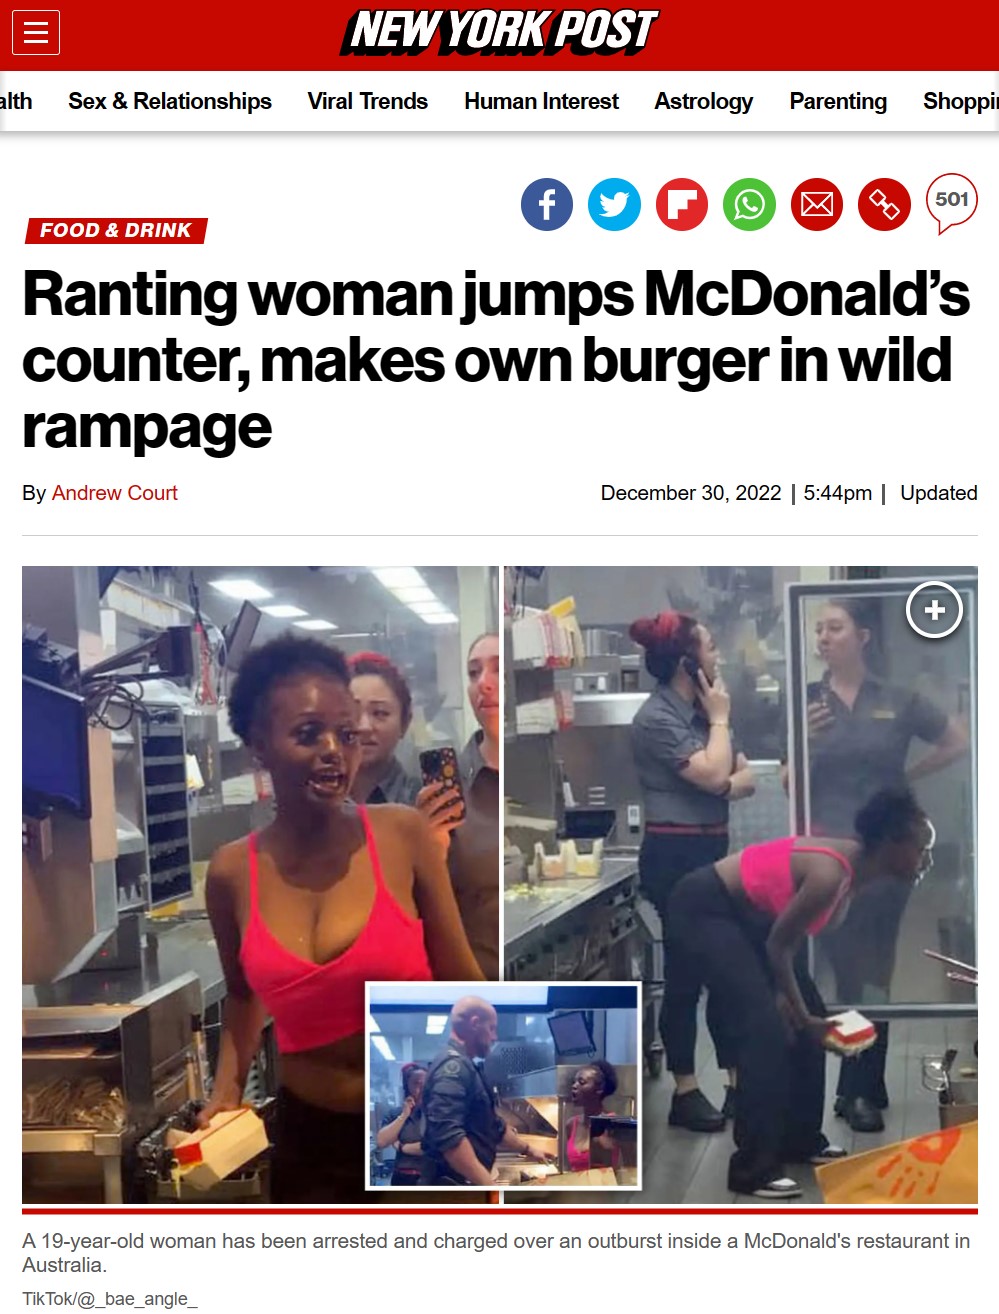 Una mujer salta el mostrador de un McDonald's y se cocina su propia hamburguesa en medio del caos